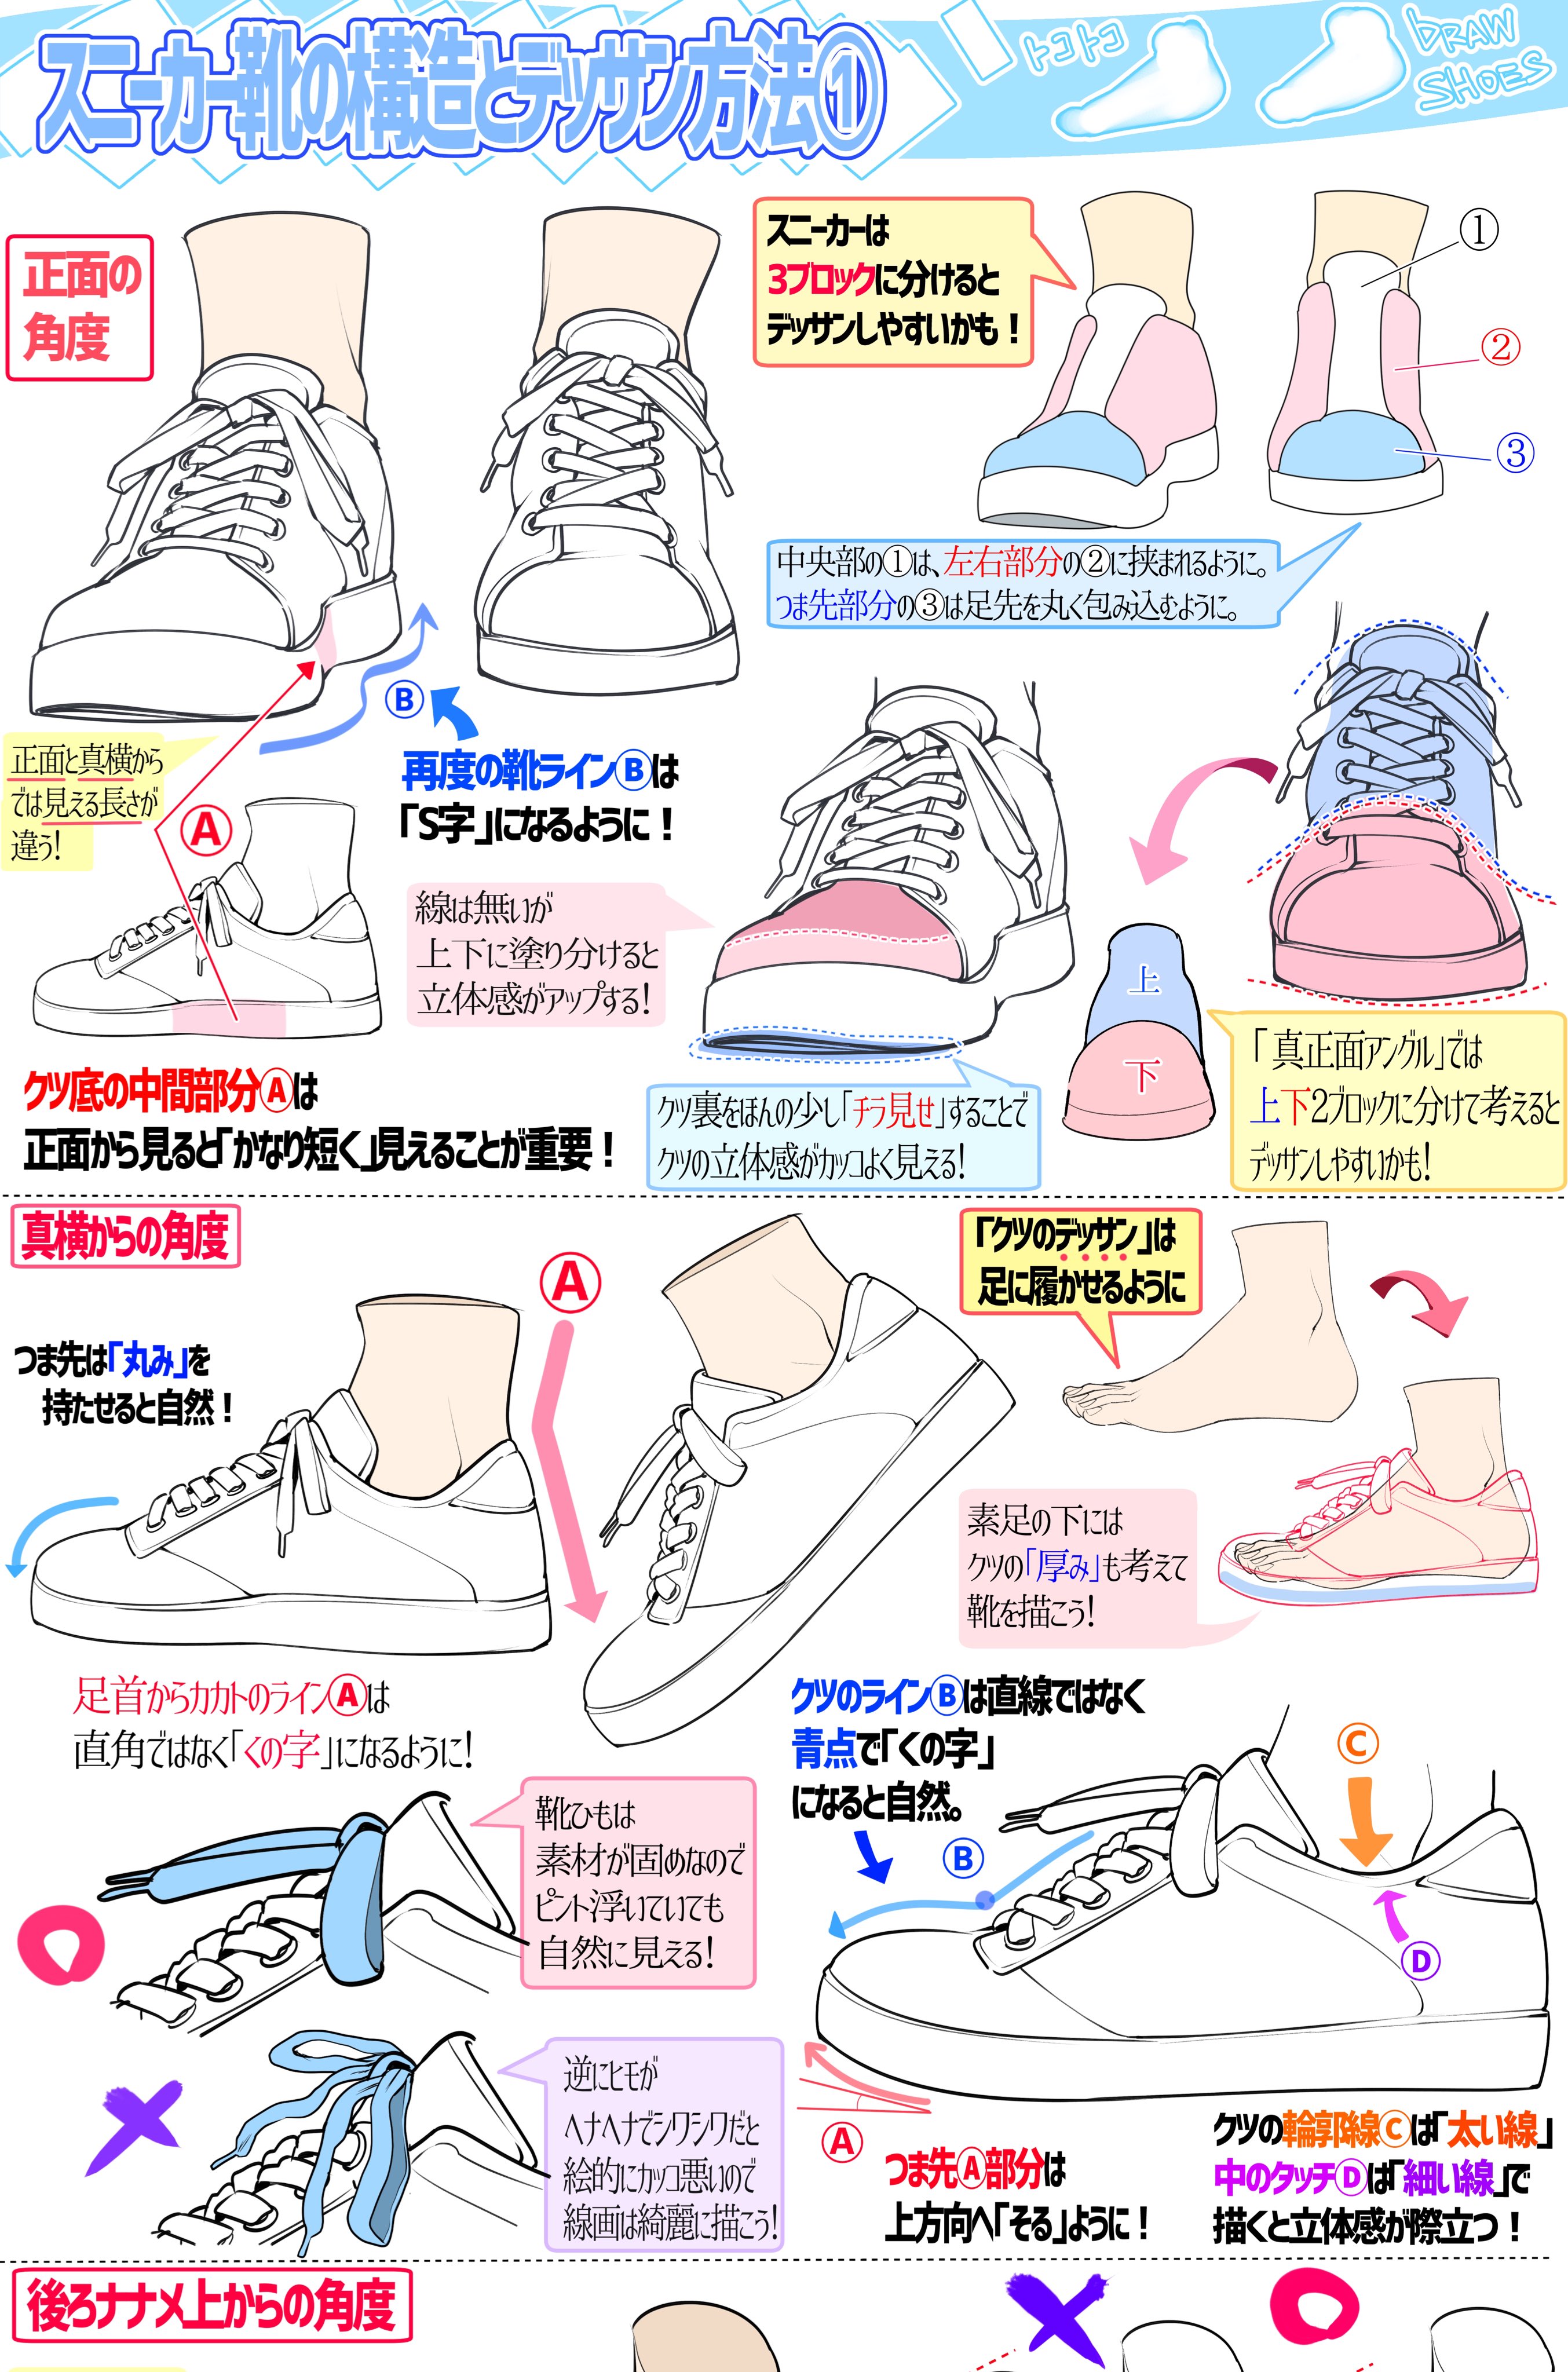 吉村拓也 イラスト講座 スニーカーをリアル風に描くときのコツ T Co Lo2czjozb8 Twitter